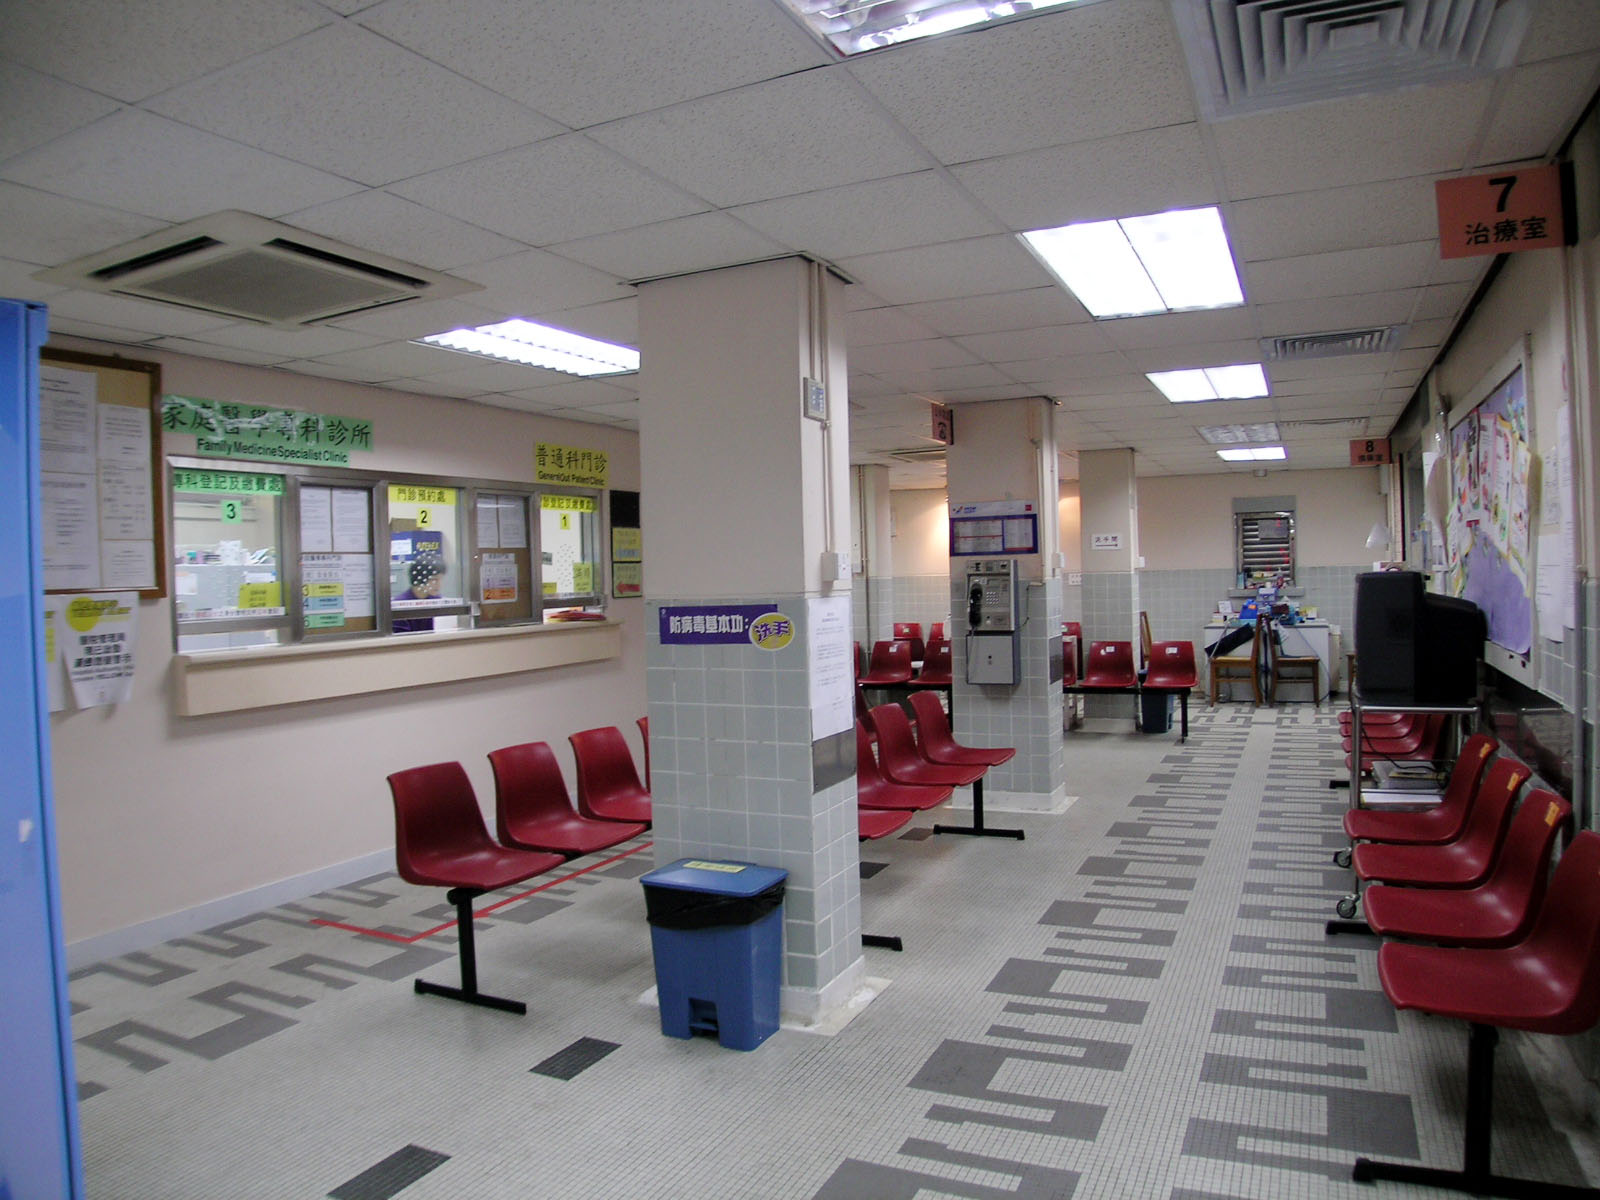 相片 3: 柴灣健康院普通科門診診所